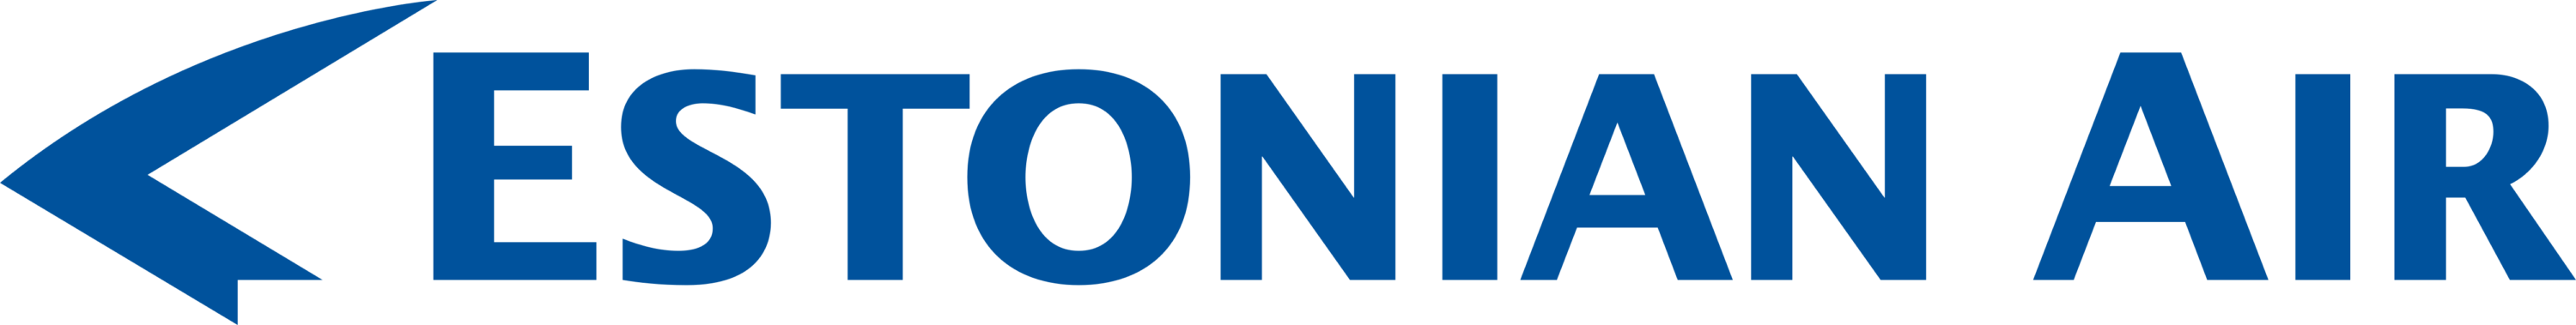 Estonian Air Logo